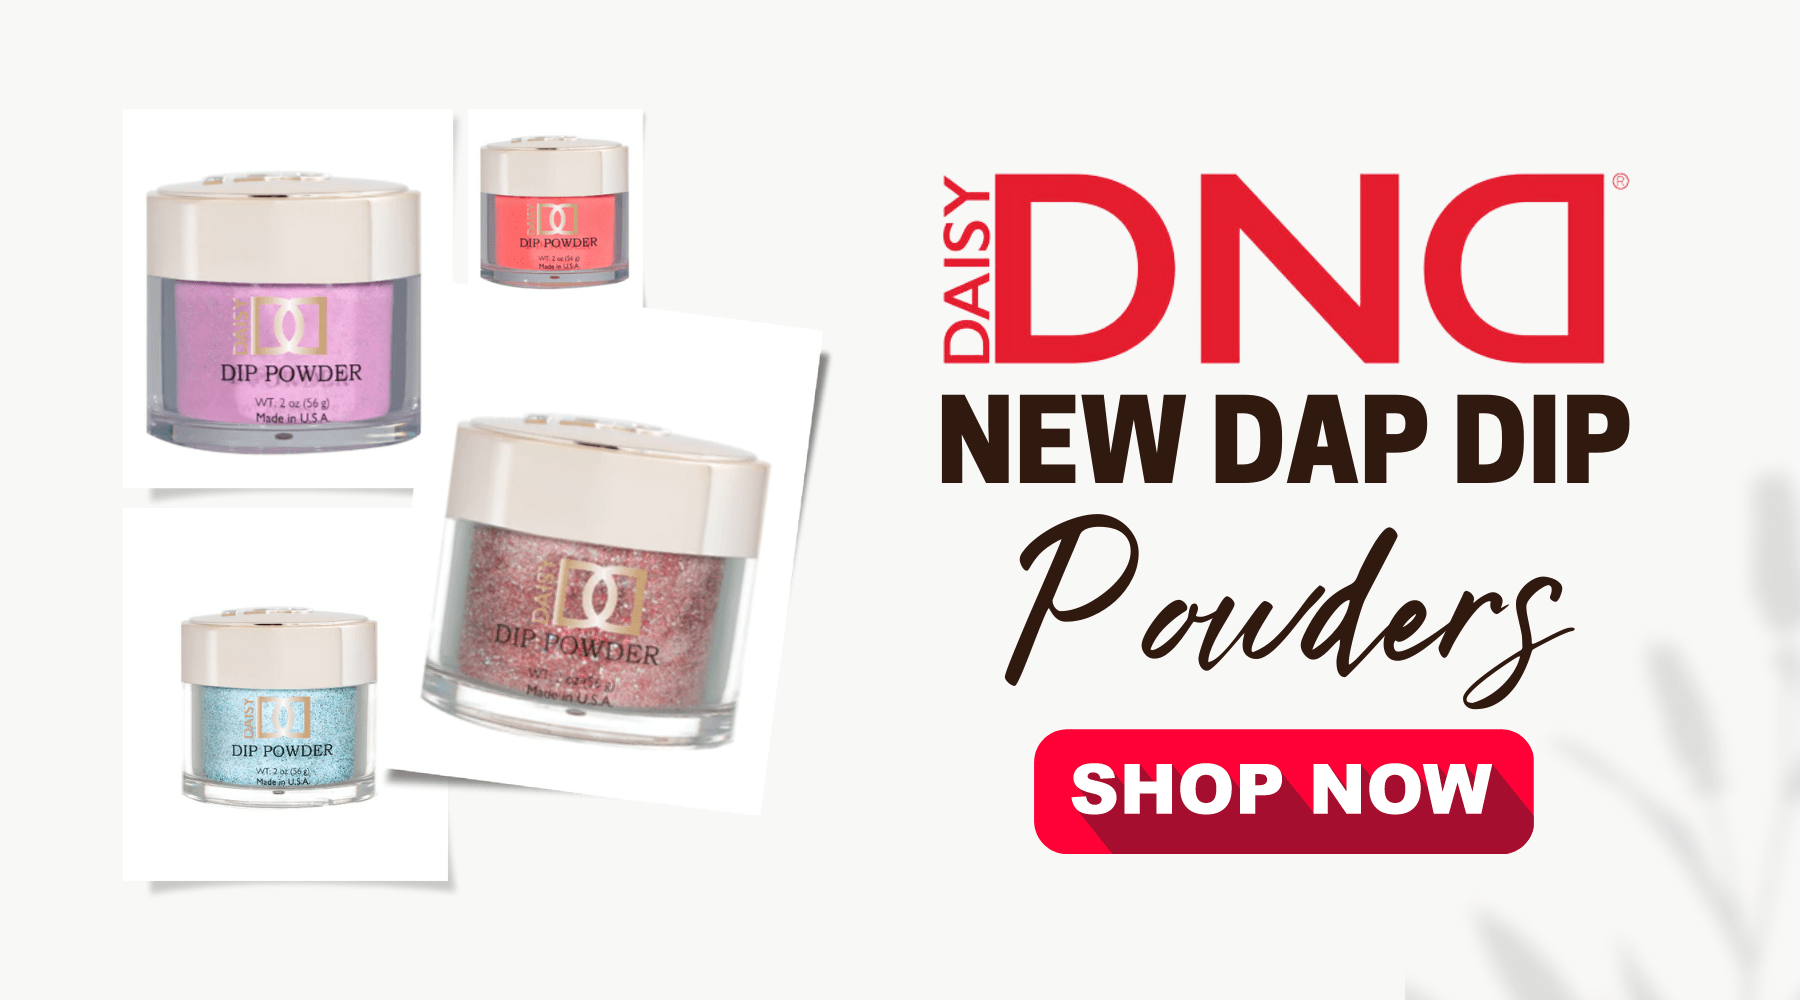 DND, Dip Powder, Dap Dip, DND Daisy, Pink, Nail Powder, Acrylic, C8 Nail Supply, Nail Supply, Nail Supply Store, Nails